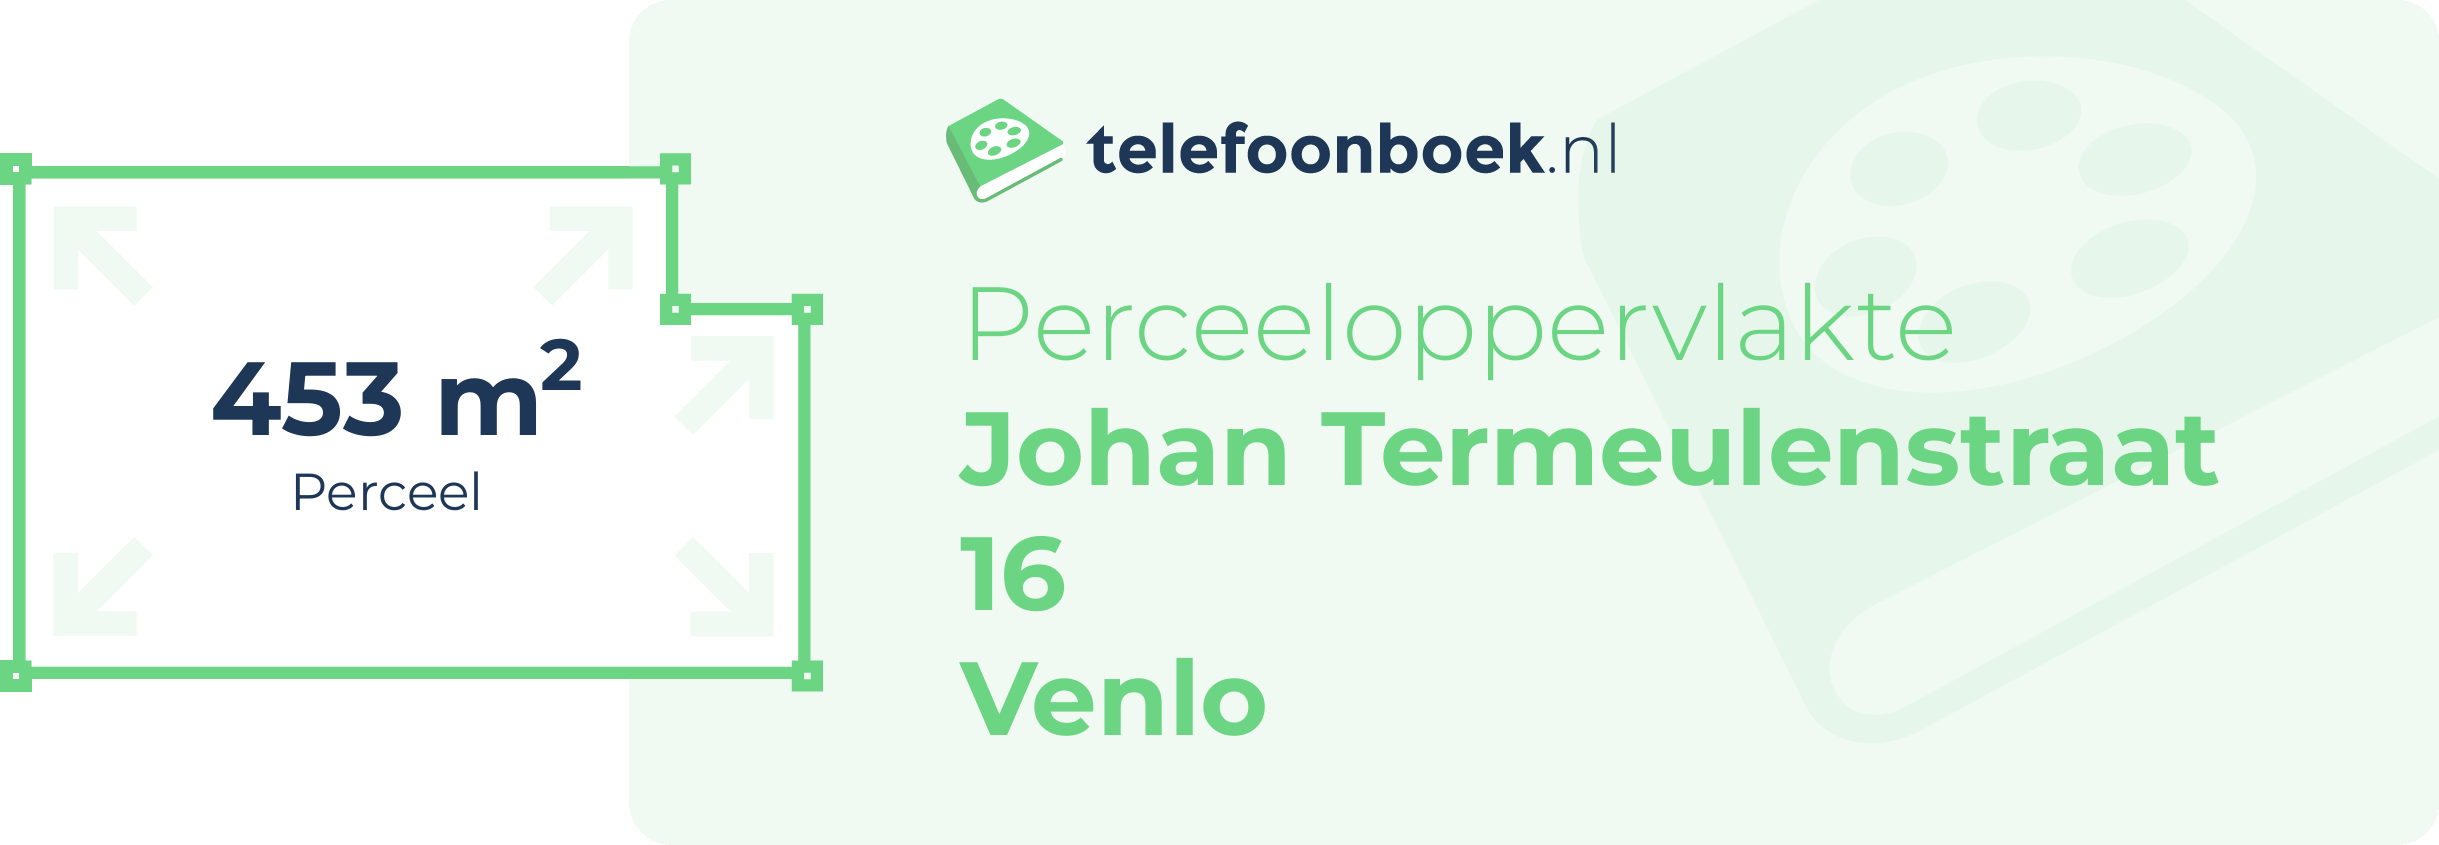 Perceeloppervlakte Johan Termeulenstraat 16 Venlo